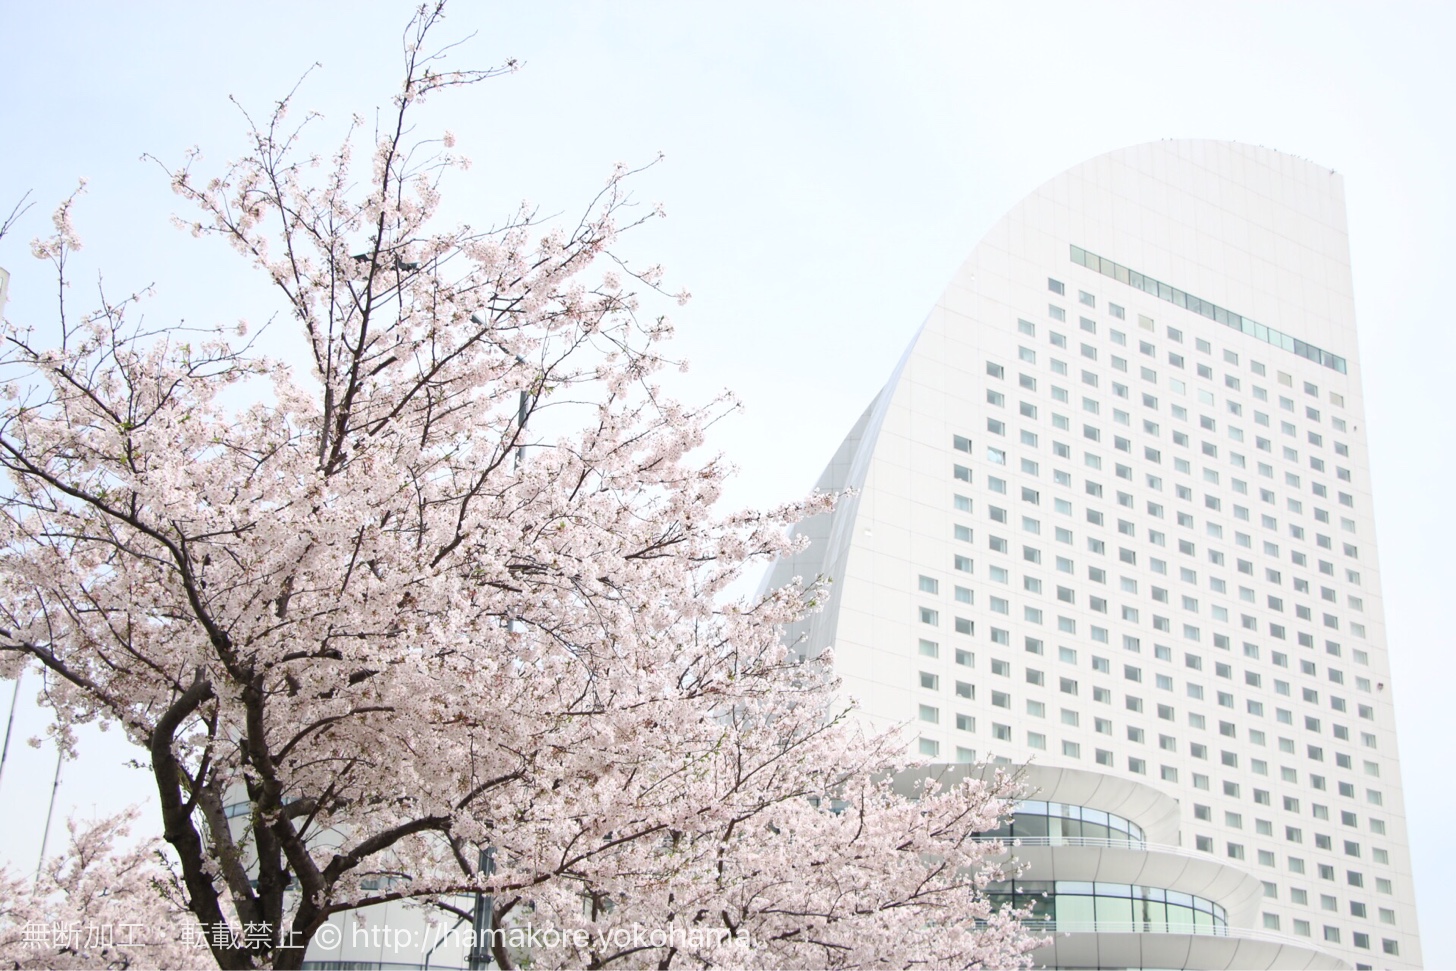 インターコンチネンタルホテルと桜